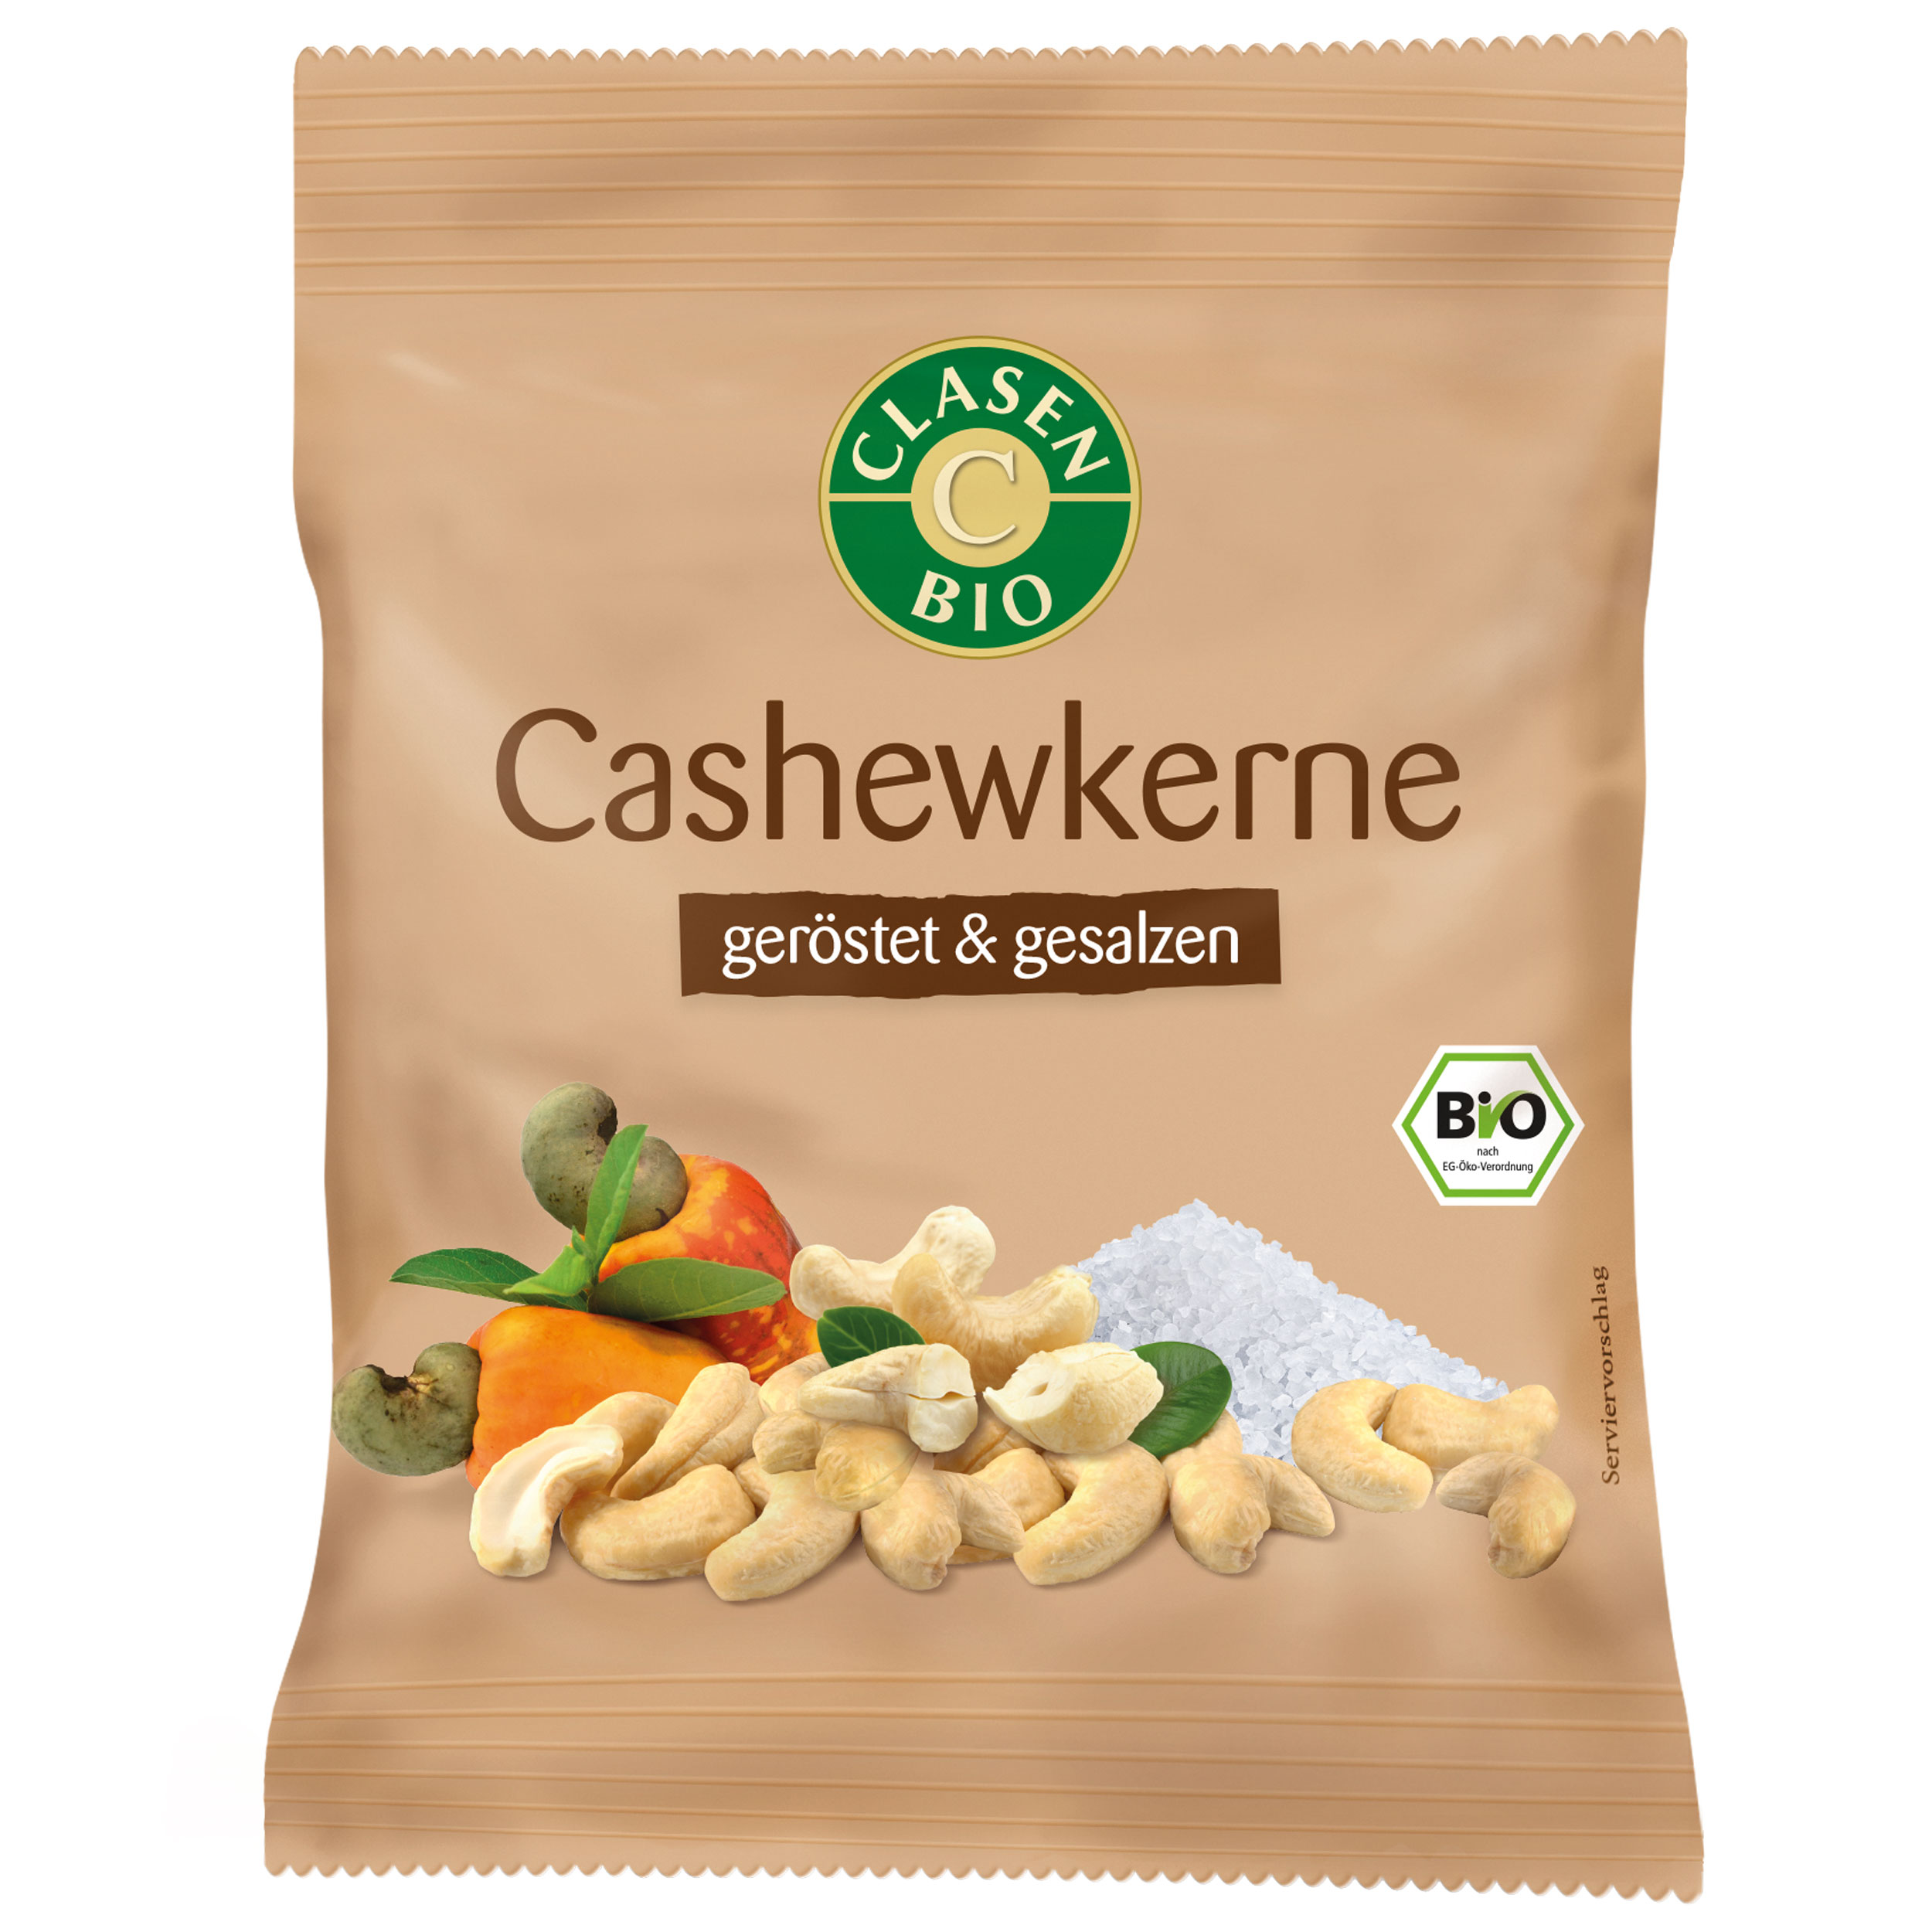 Cashewkerne (geröstet und gesalzen) Snack Pack 